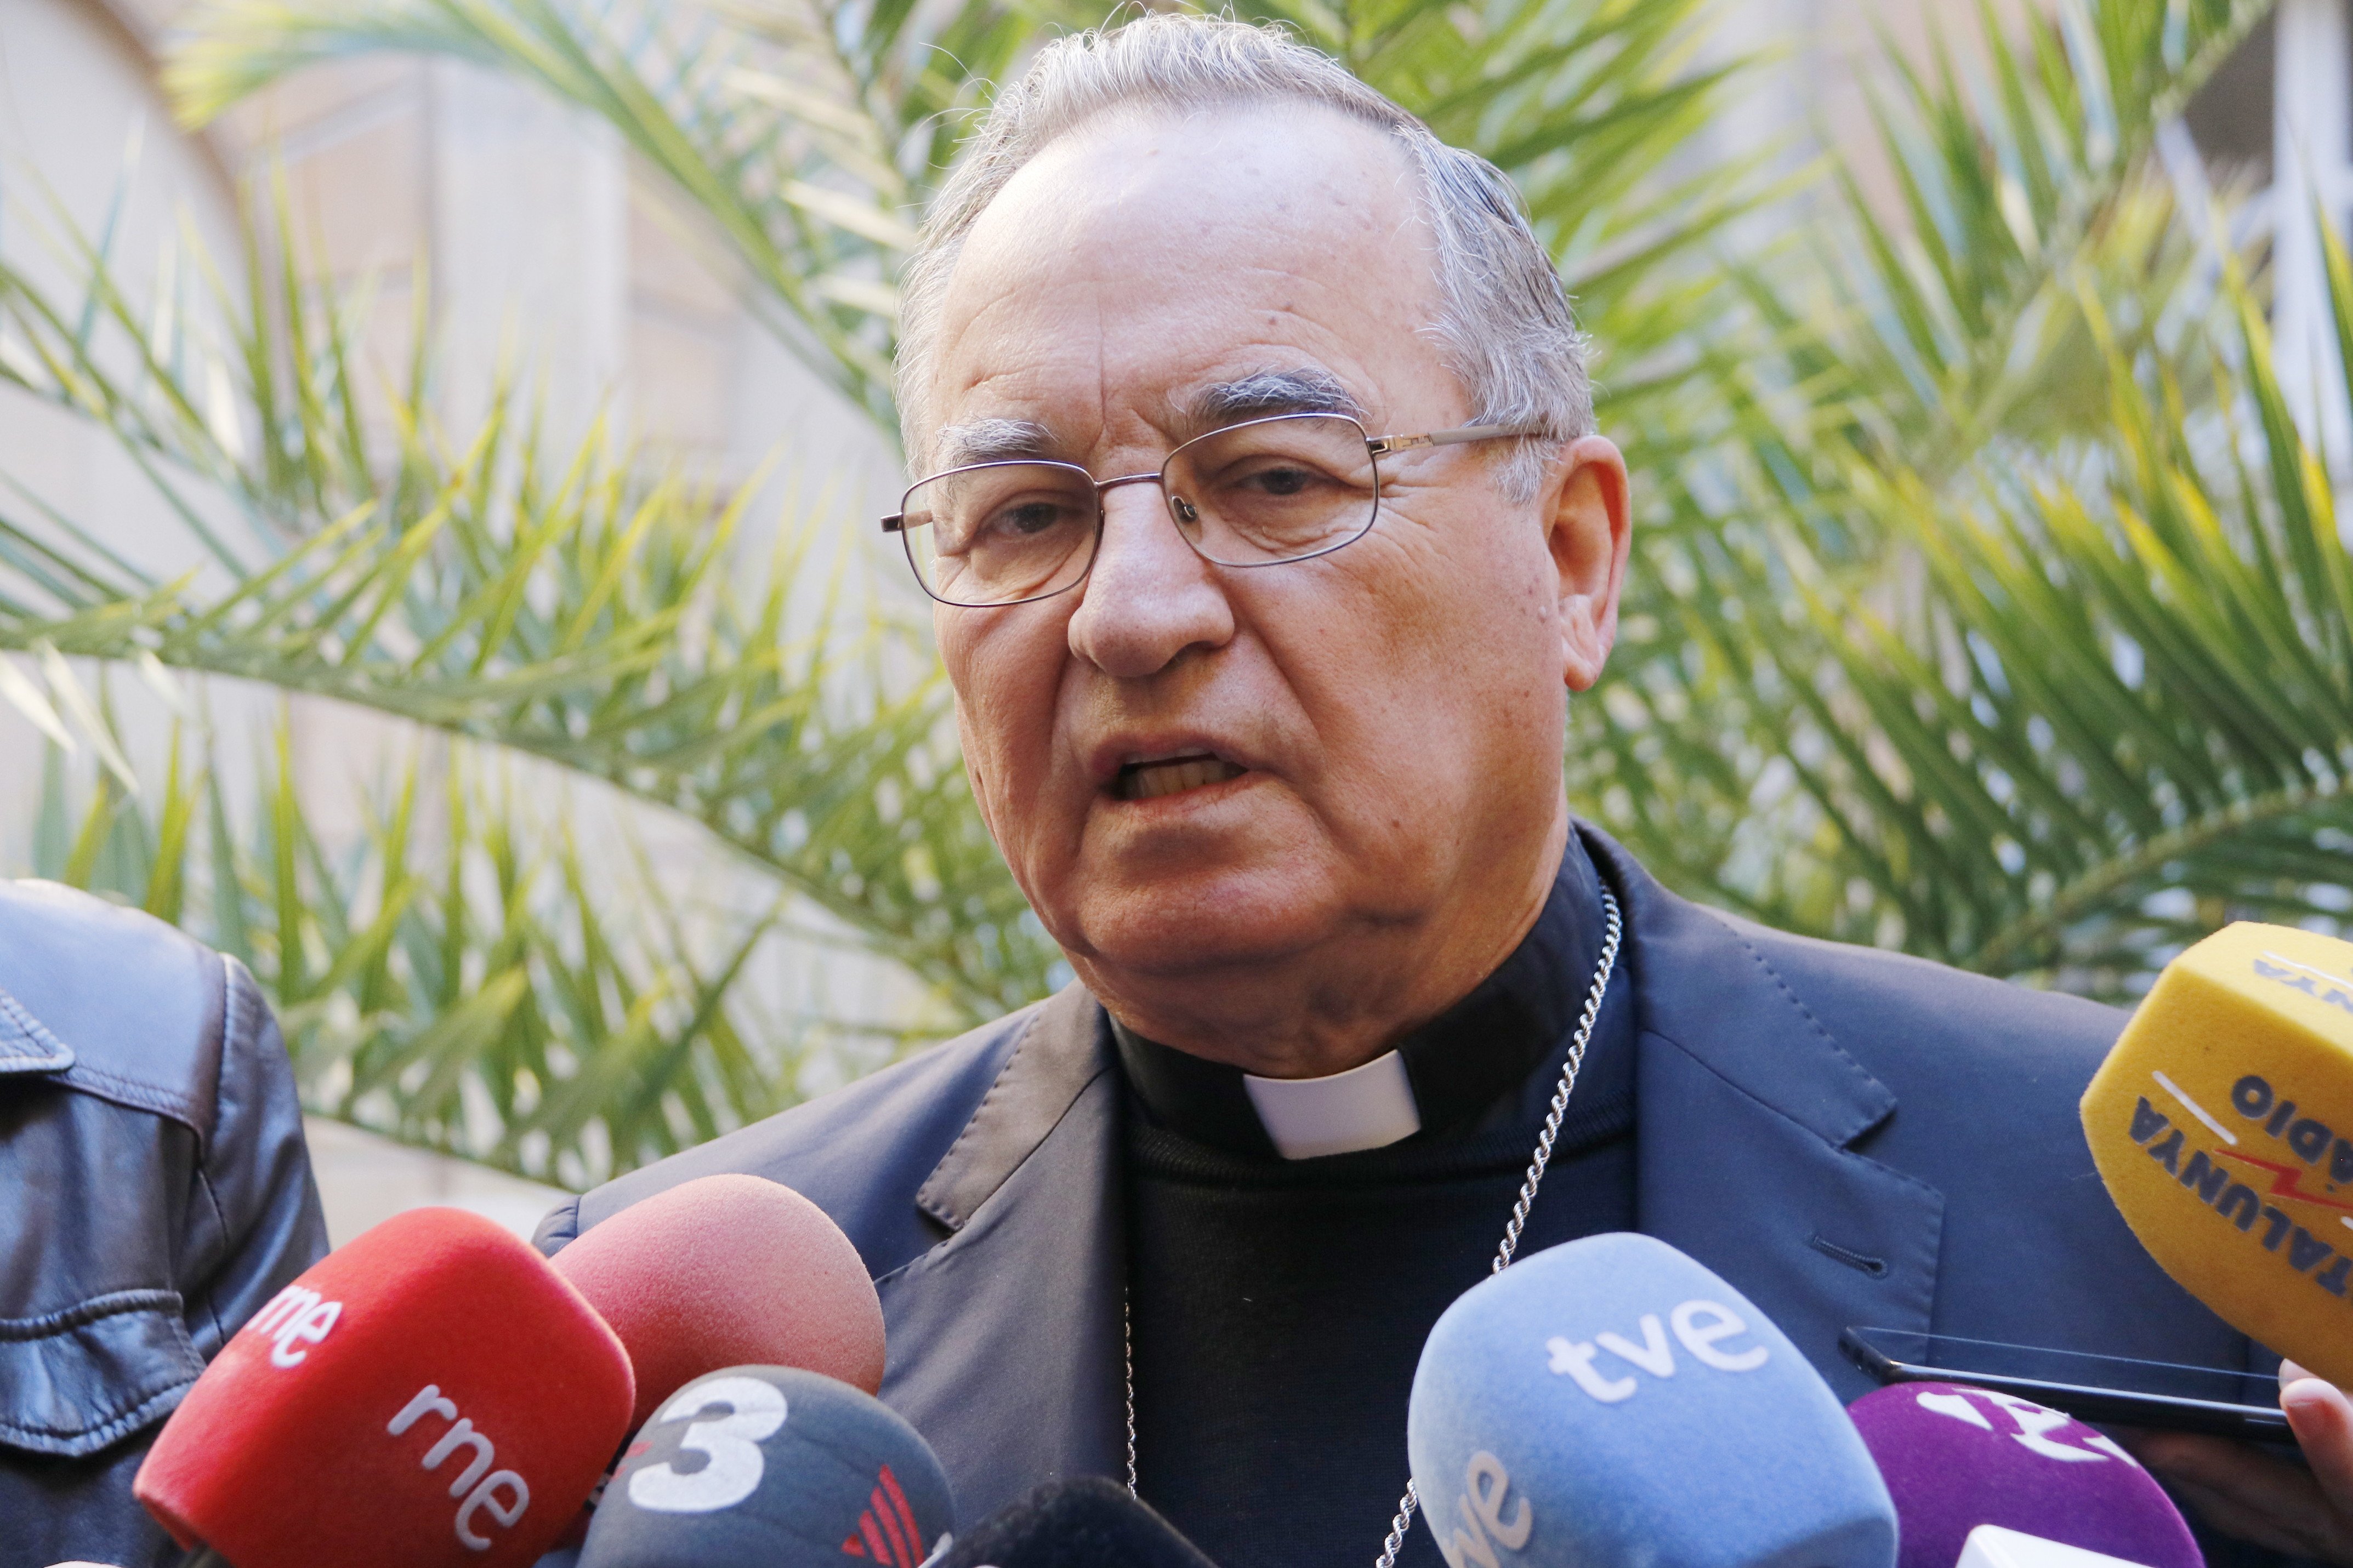 El arzobispo de Tarragona no ve ''tan graves'' los abusos como para secularizar a los rectores